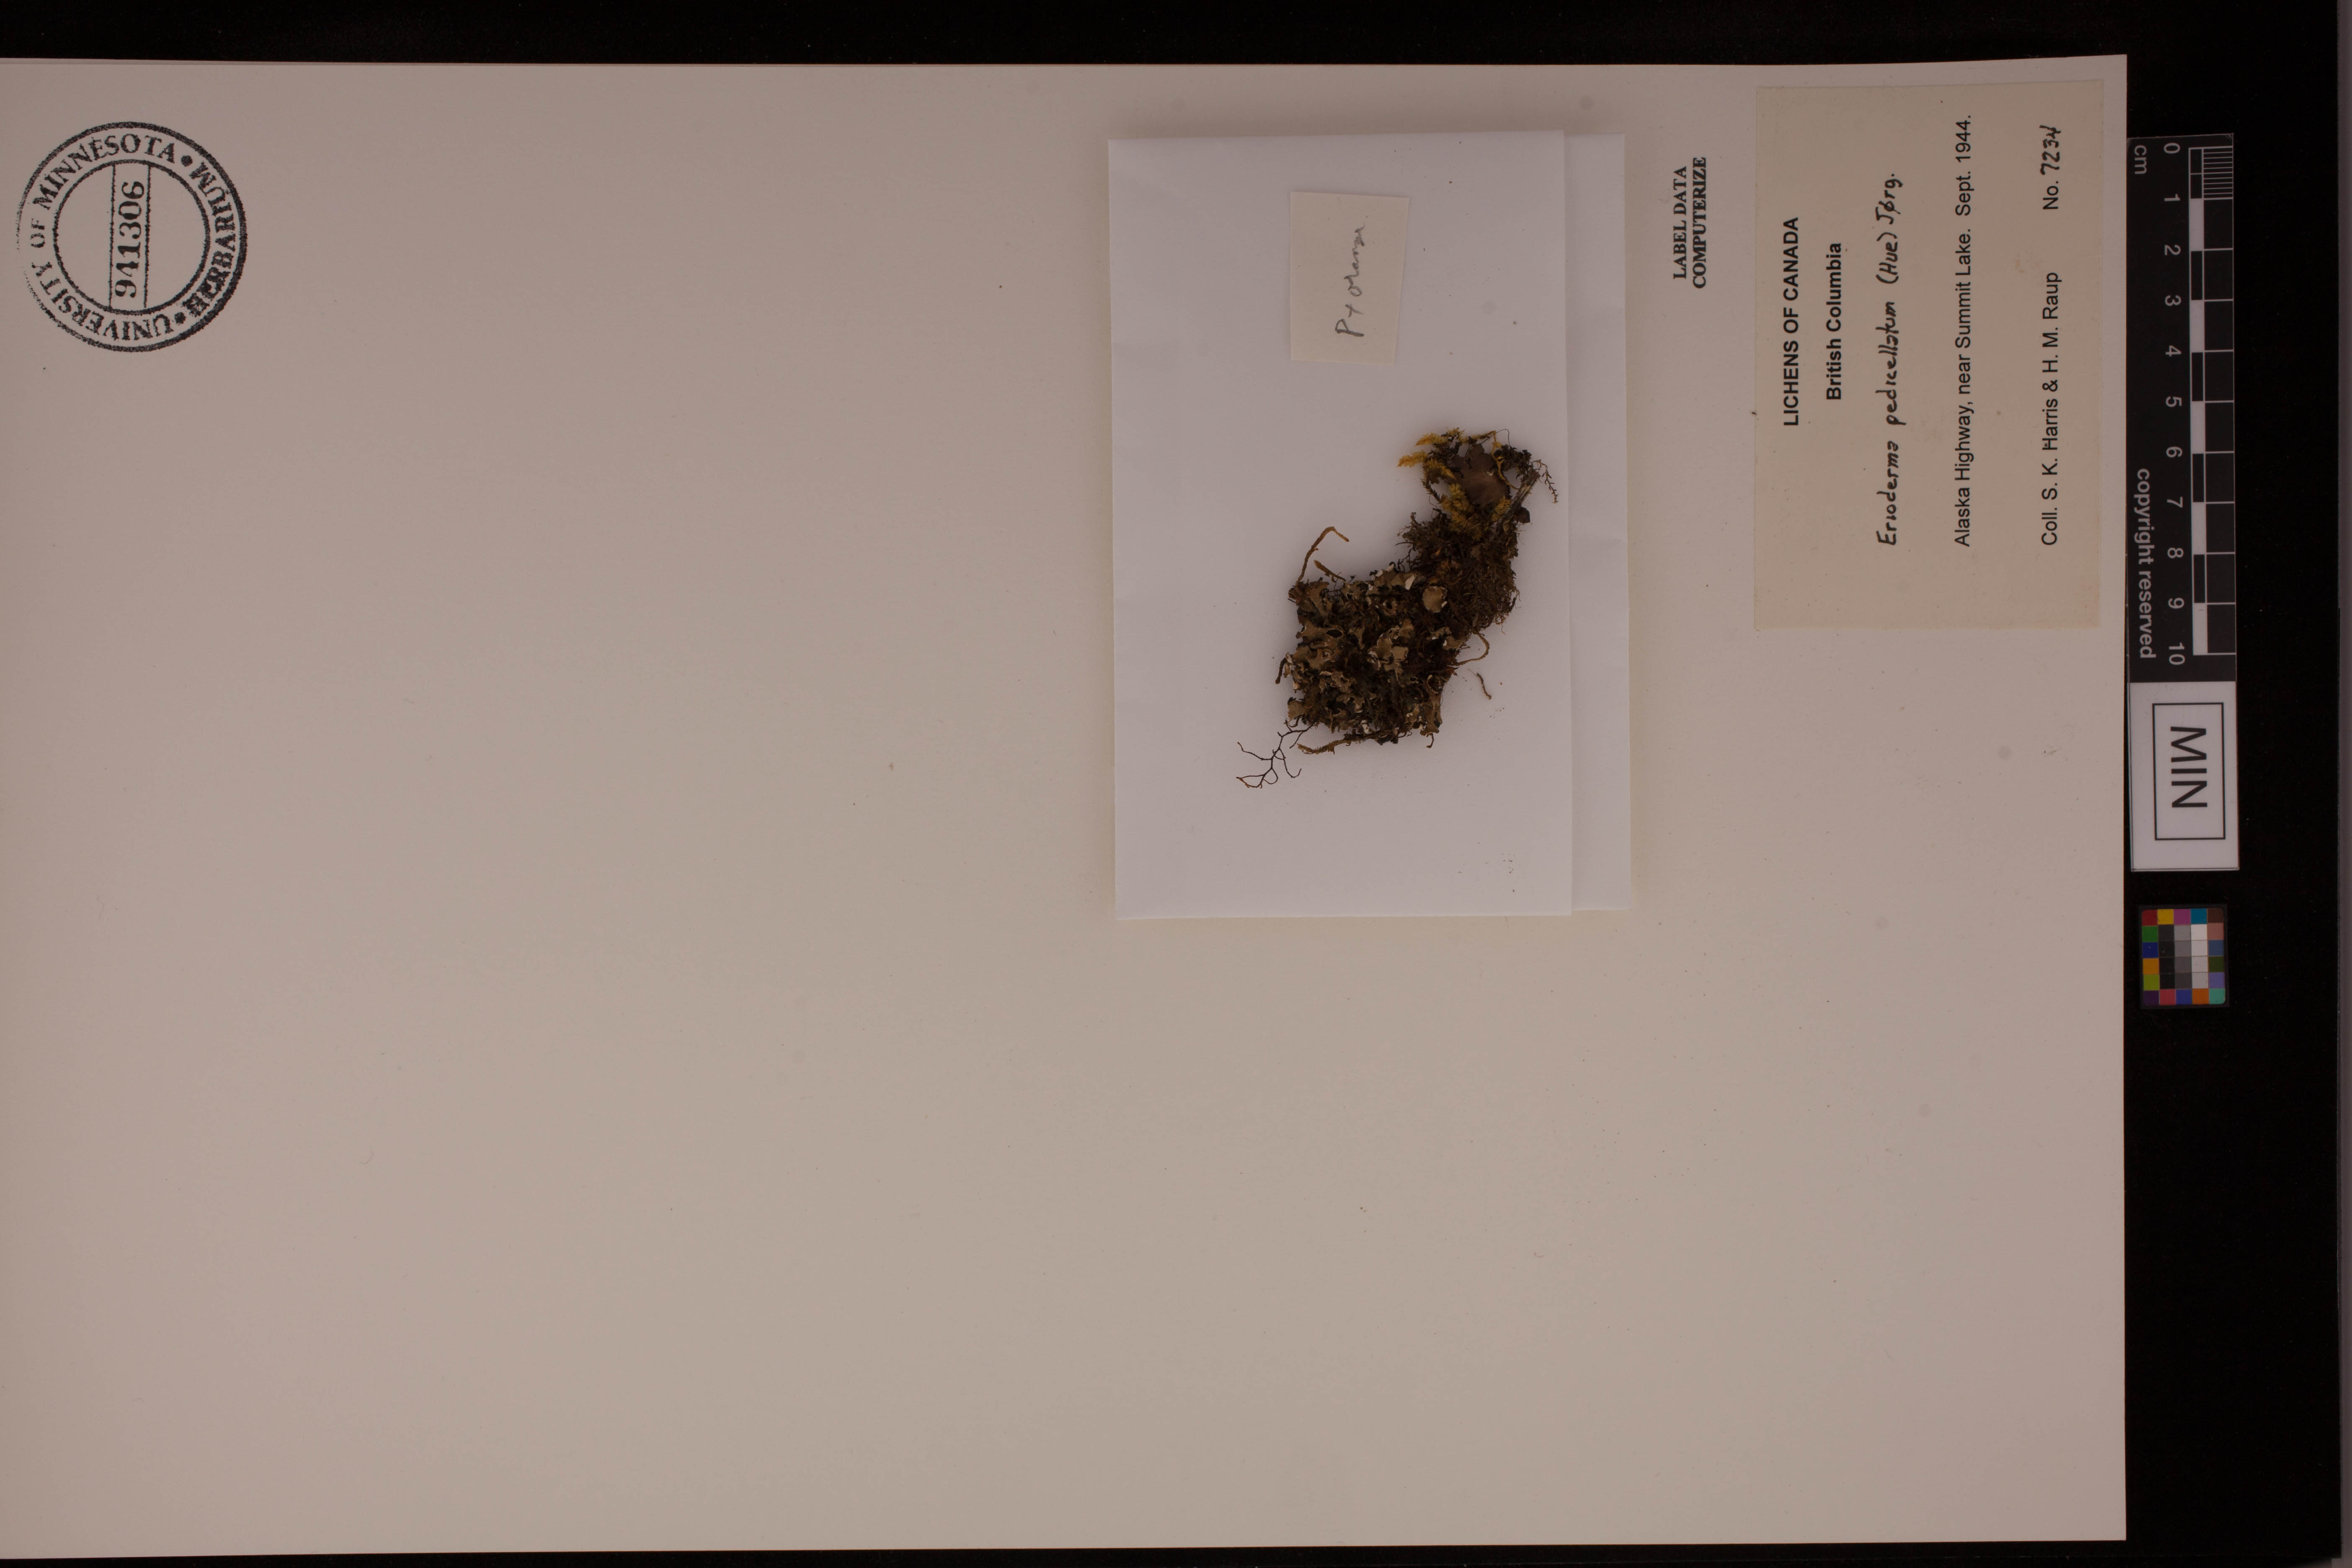 Erioderma pedicellatum image